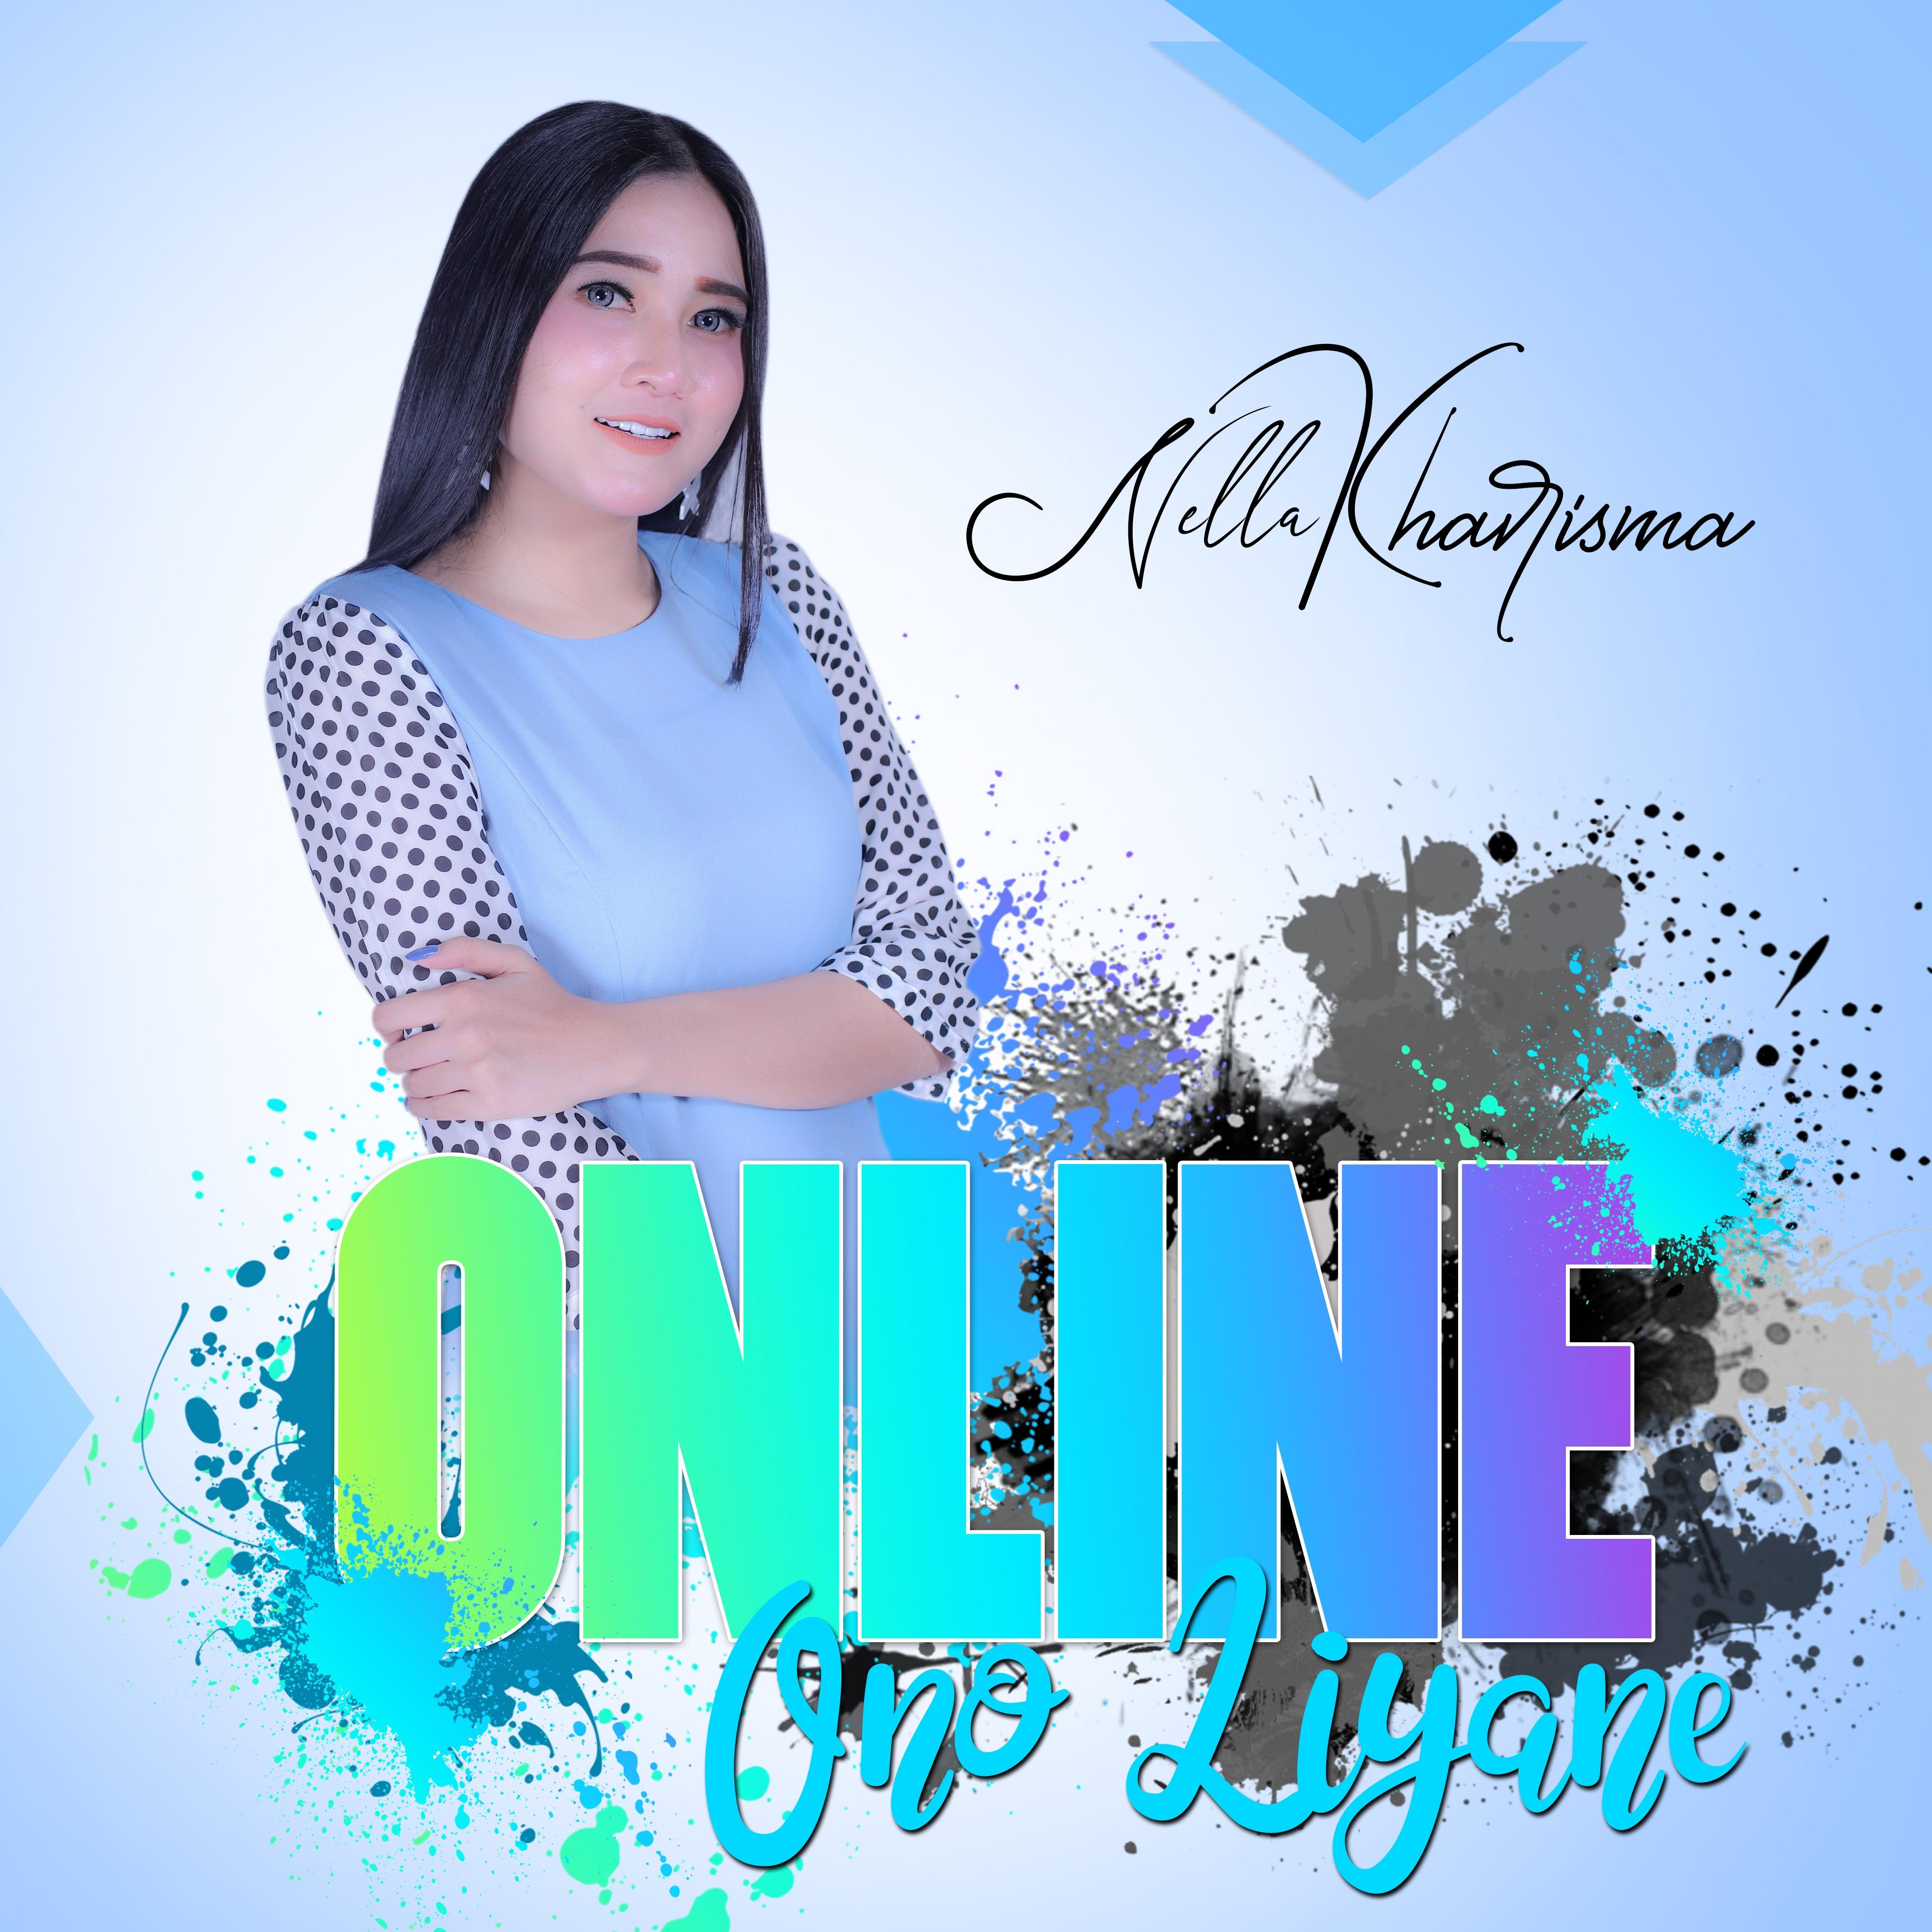 Online - Ono Liyane